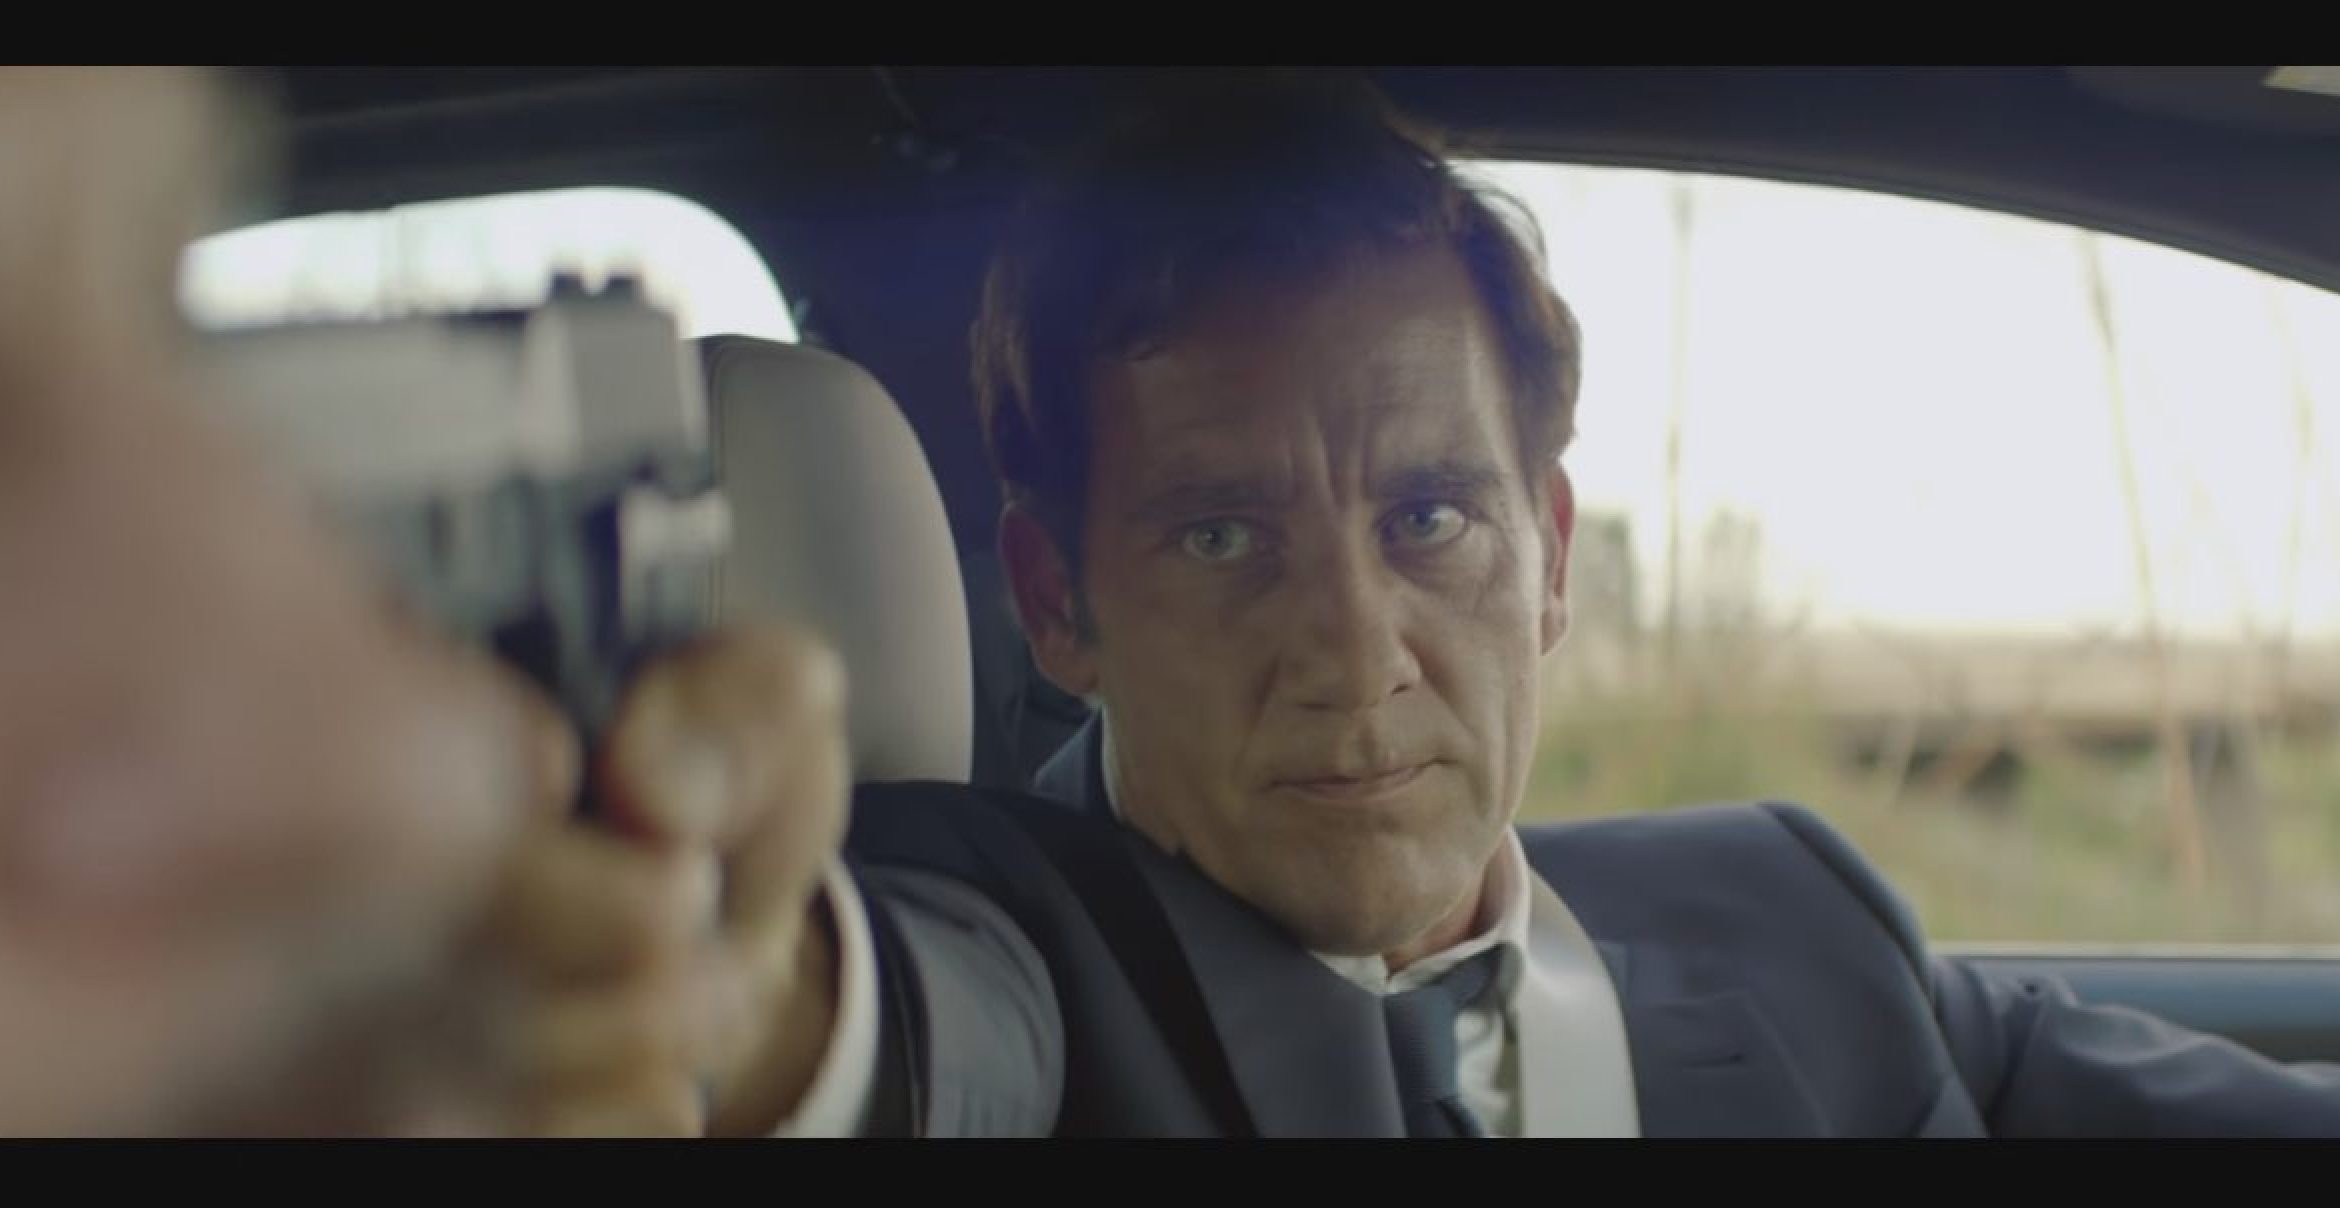 Der “Driver“ ist zurück: BMW liefert mit neuem Kurzfilm eine hochkarätige Hommage an “The Hire“